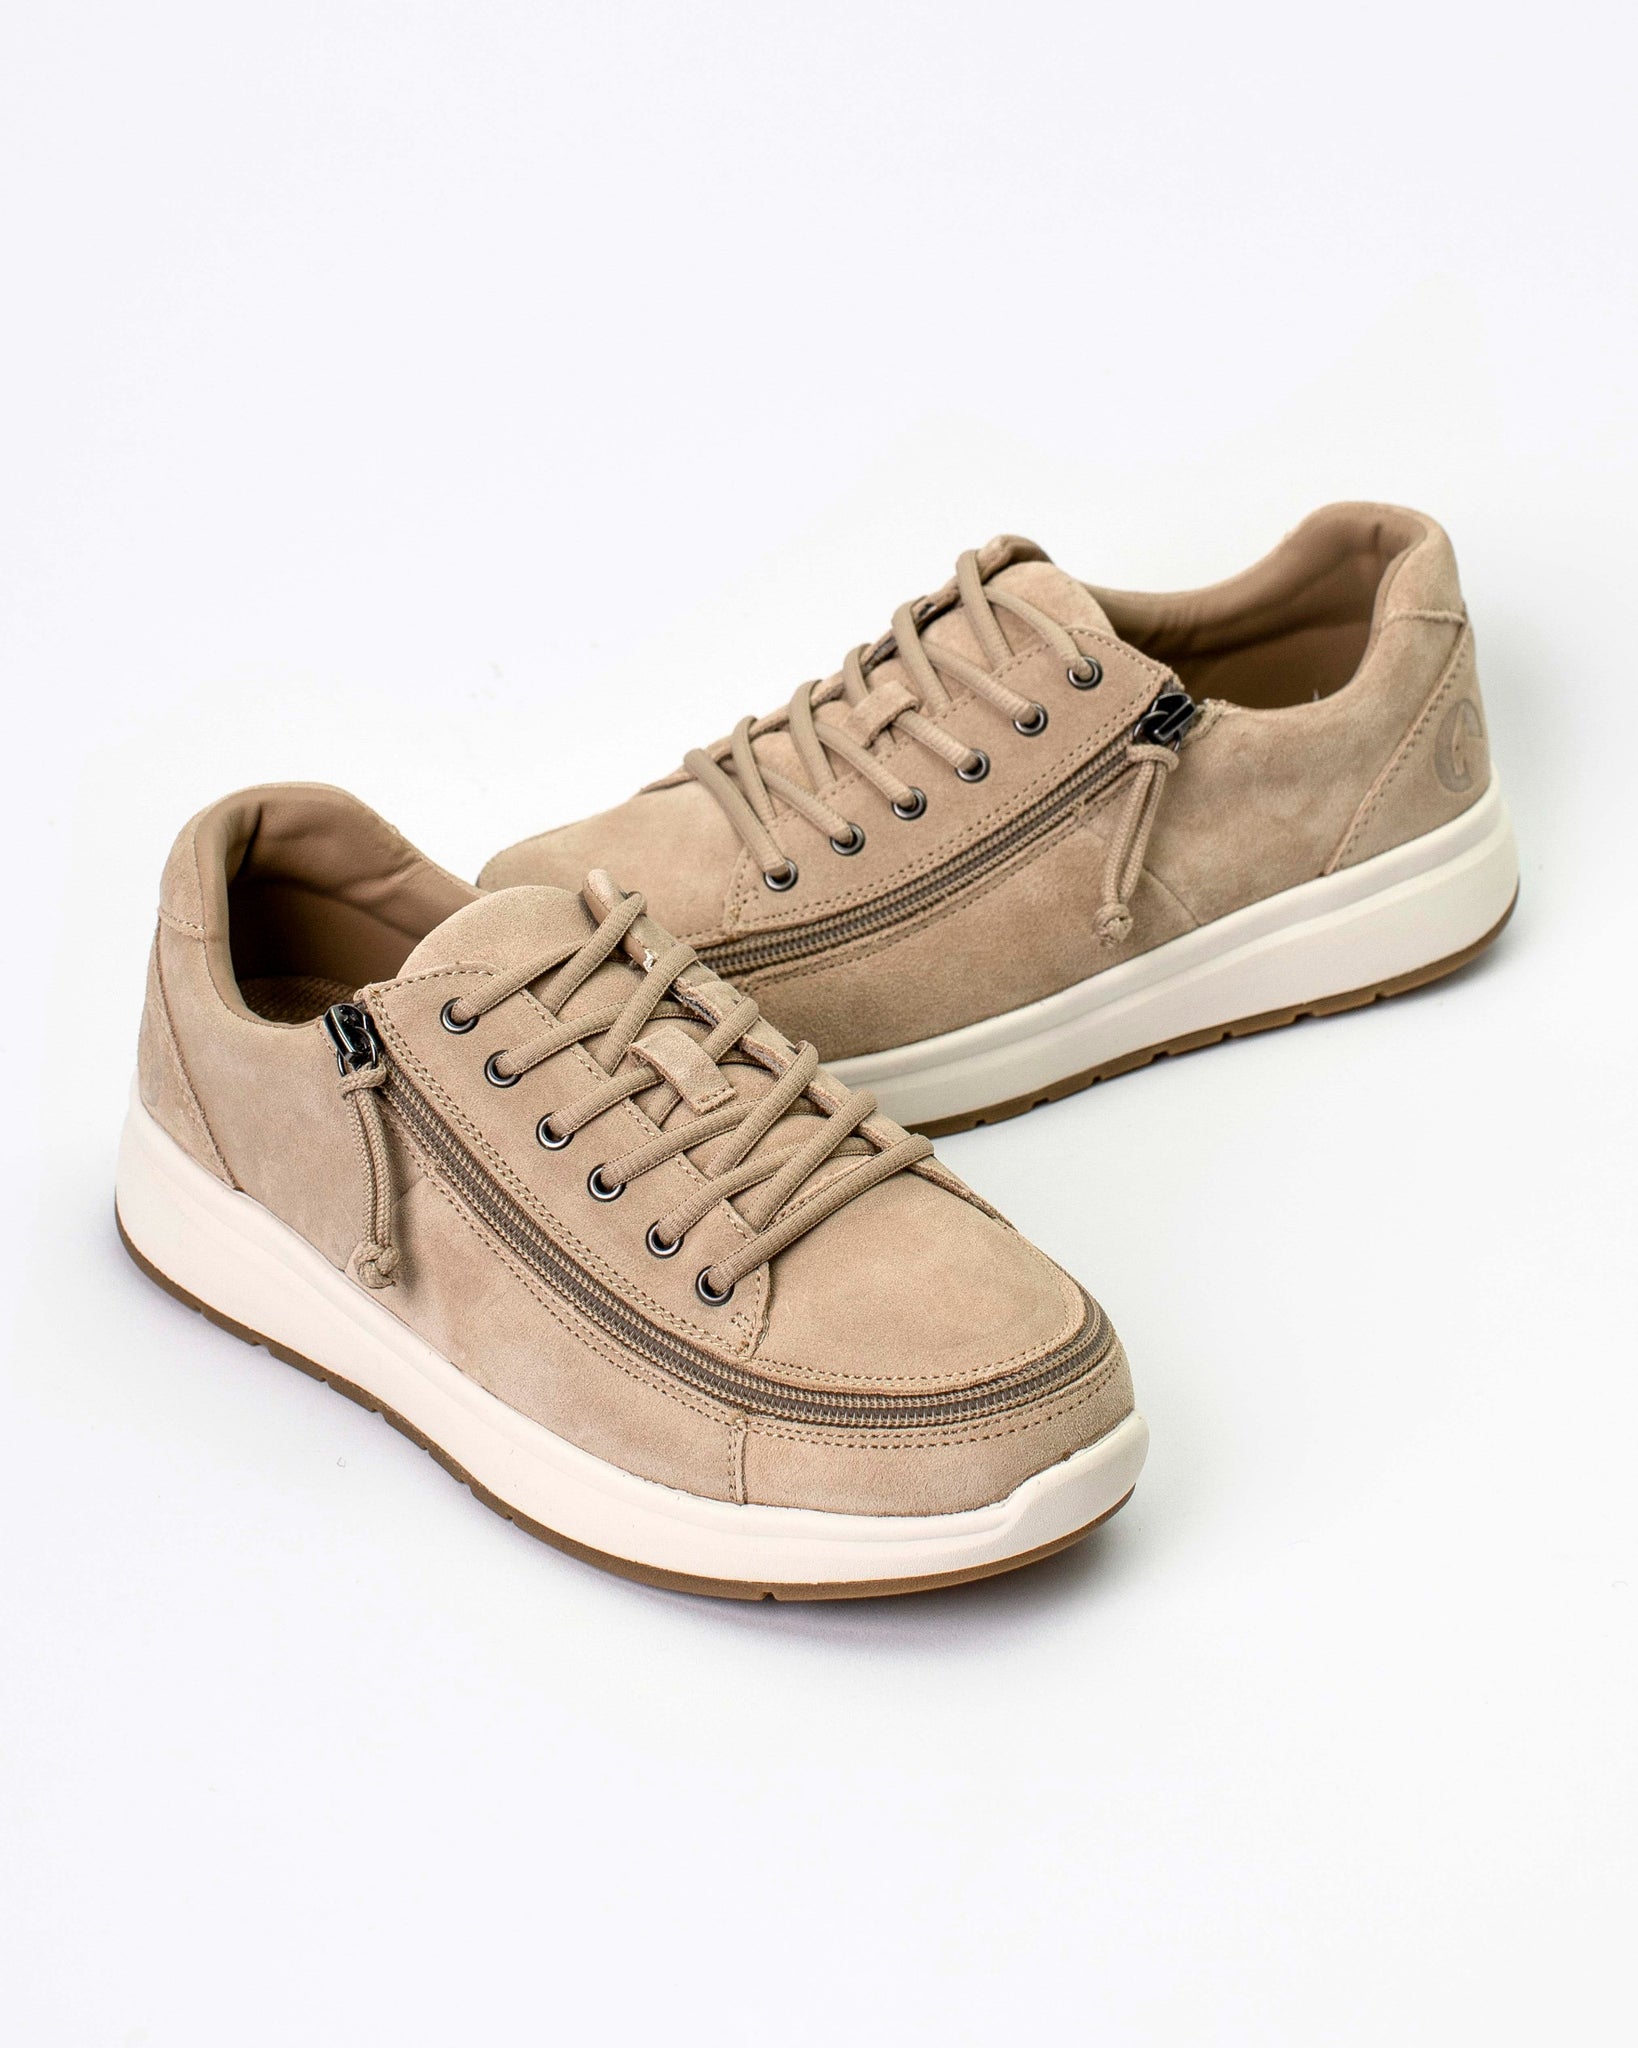 Comfort Sneaker (Women) - Tan Suede